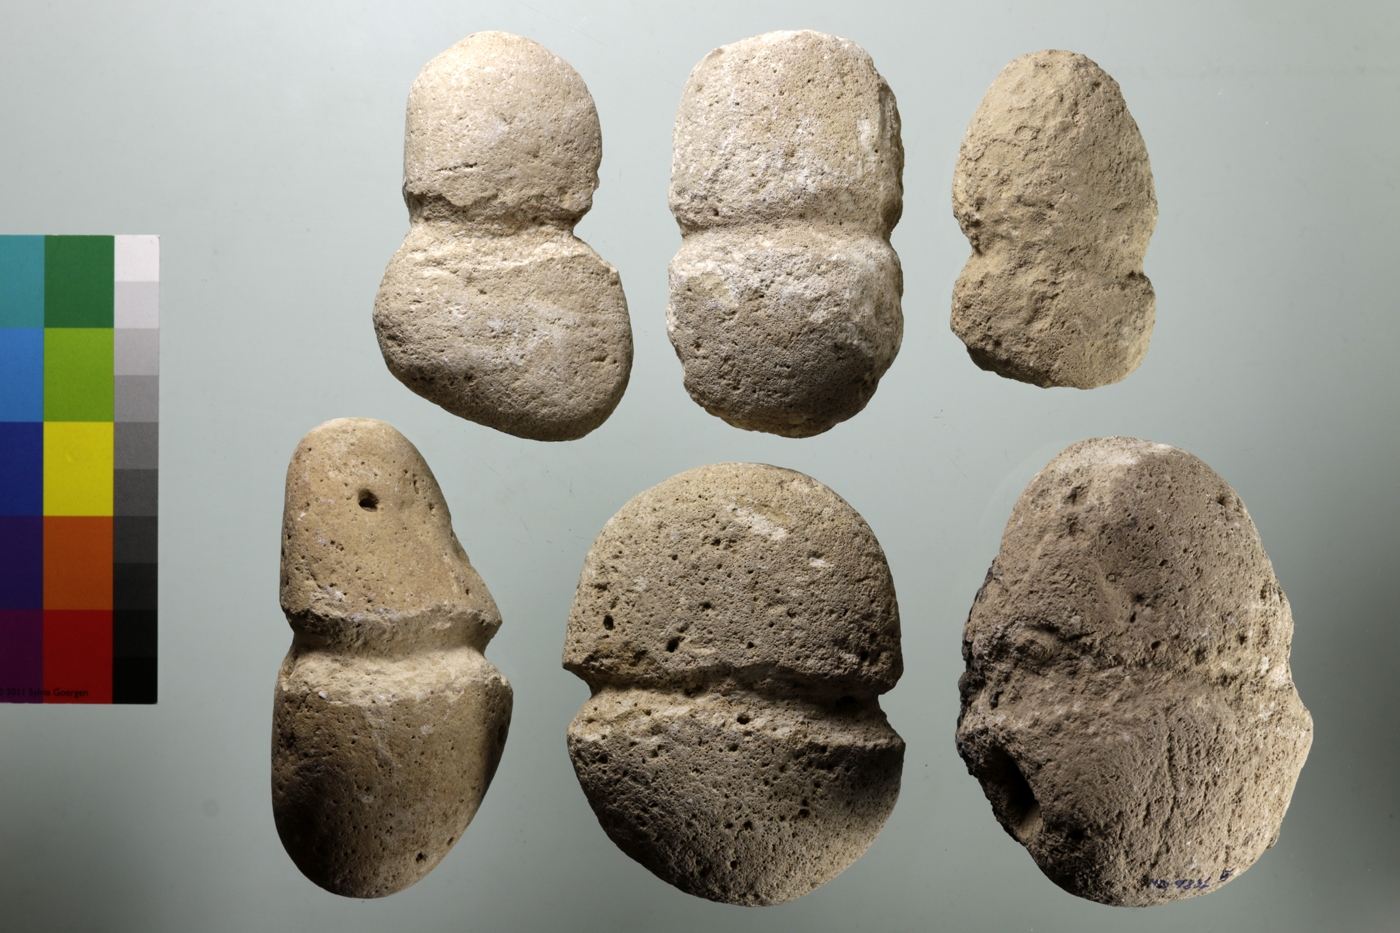 Steine mit schmalen Einkerbungen an der maximalen Ausdehnung des Objekts. Diese Gegenstände fungierten vermutlich zur Aufhängung als Gewichtsteine. 